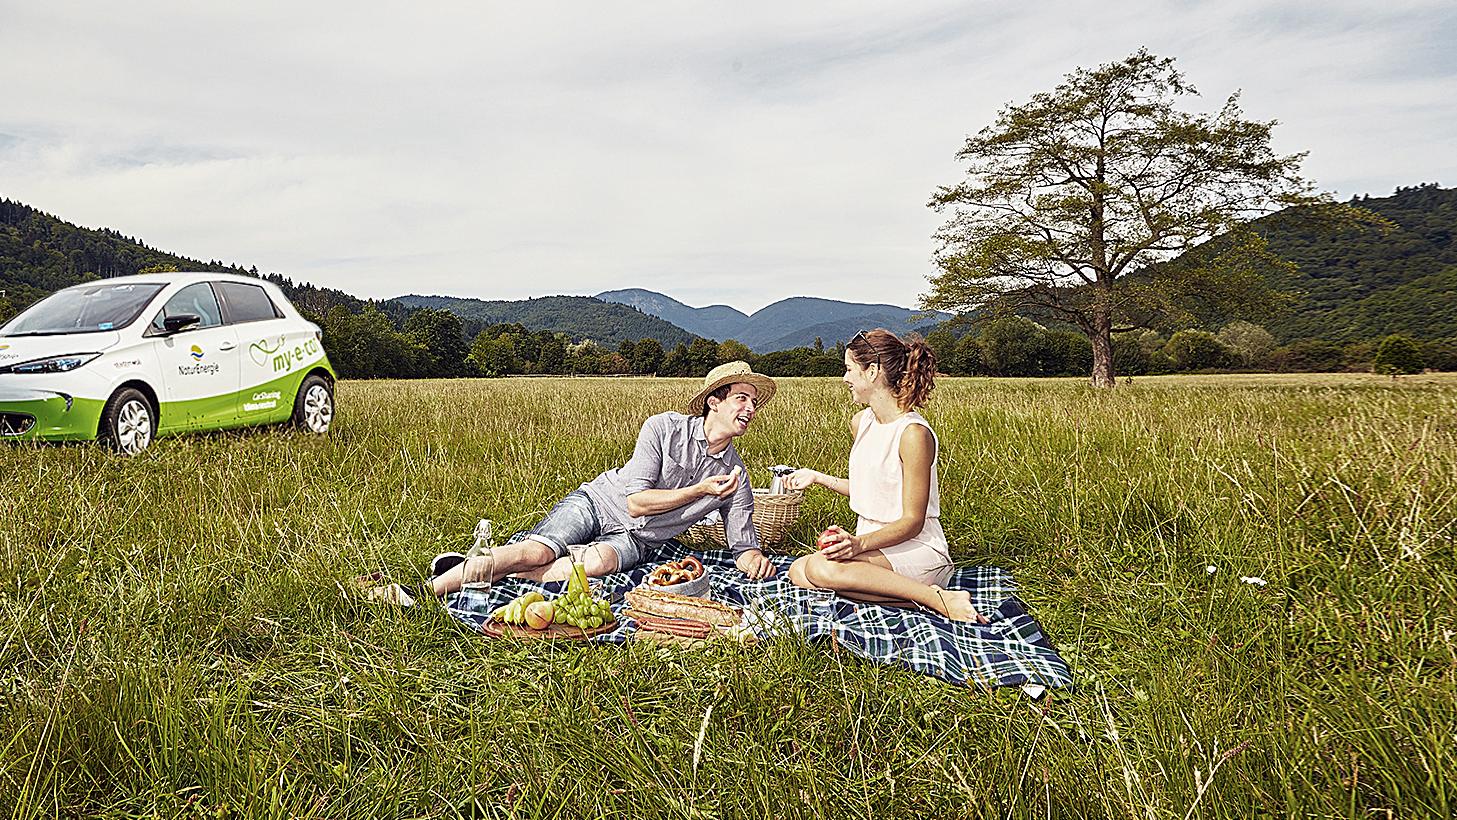 Mann und Frau picknicken auf der Wiese, im Hintergrund steht ein E-Auto